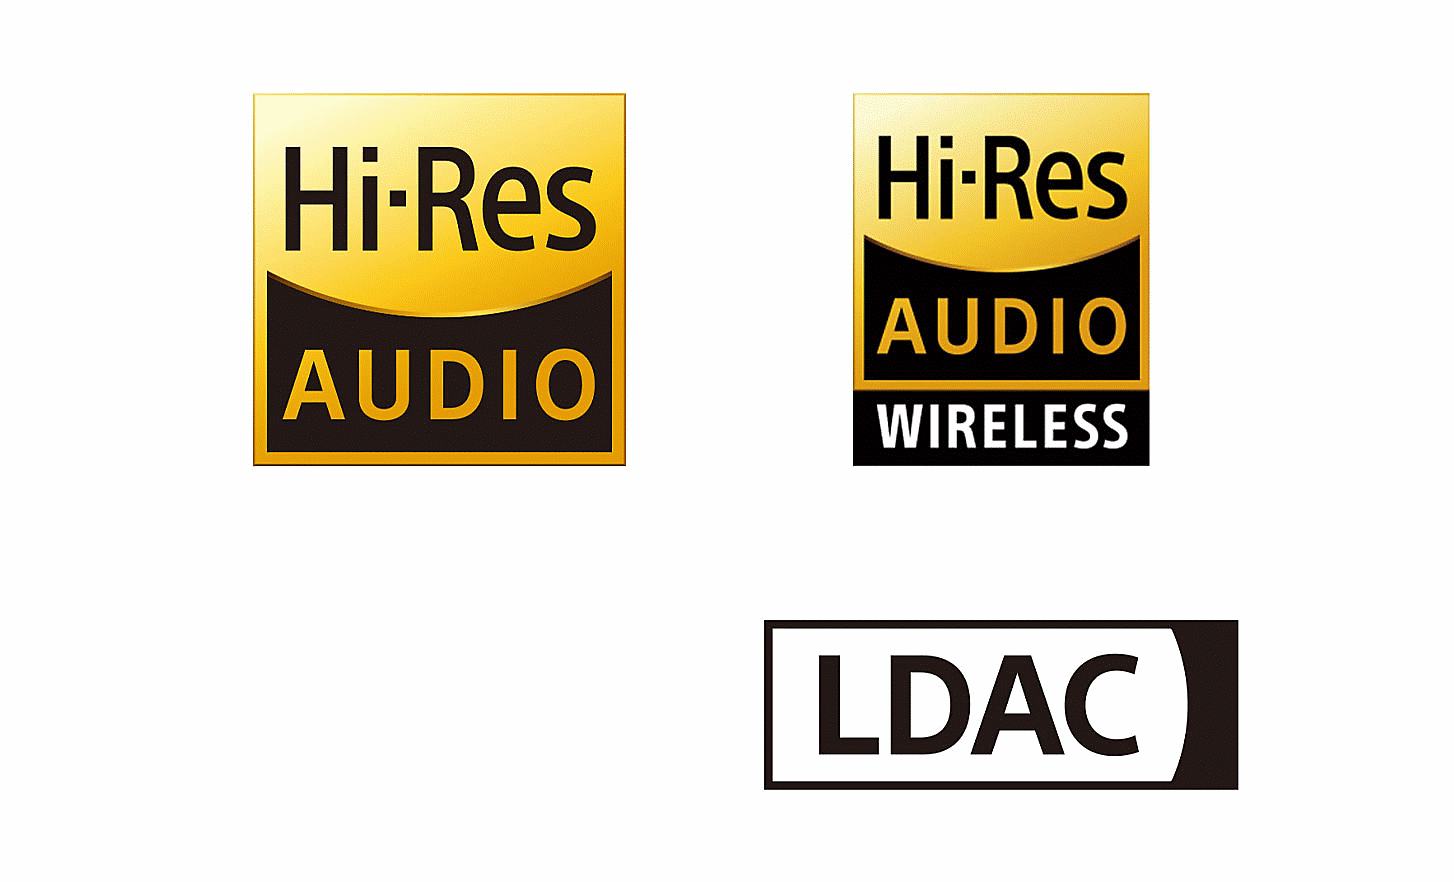 Logotipos de High-Resolution Audio, High-Resolution Audio inalámbrico y LDAC.